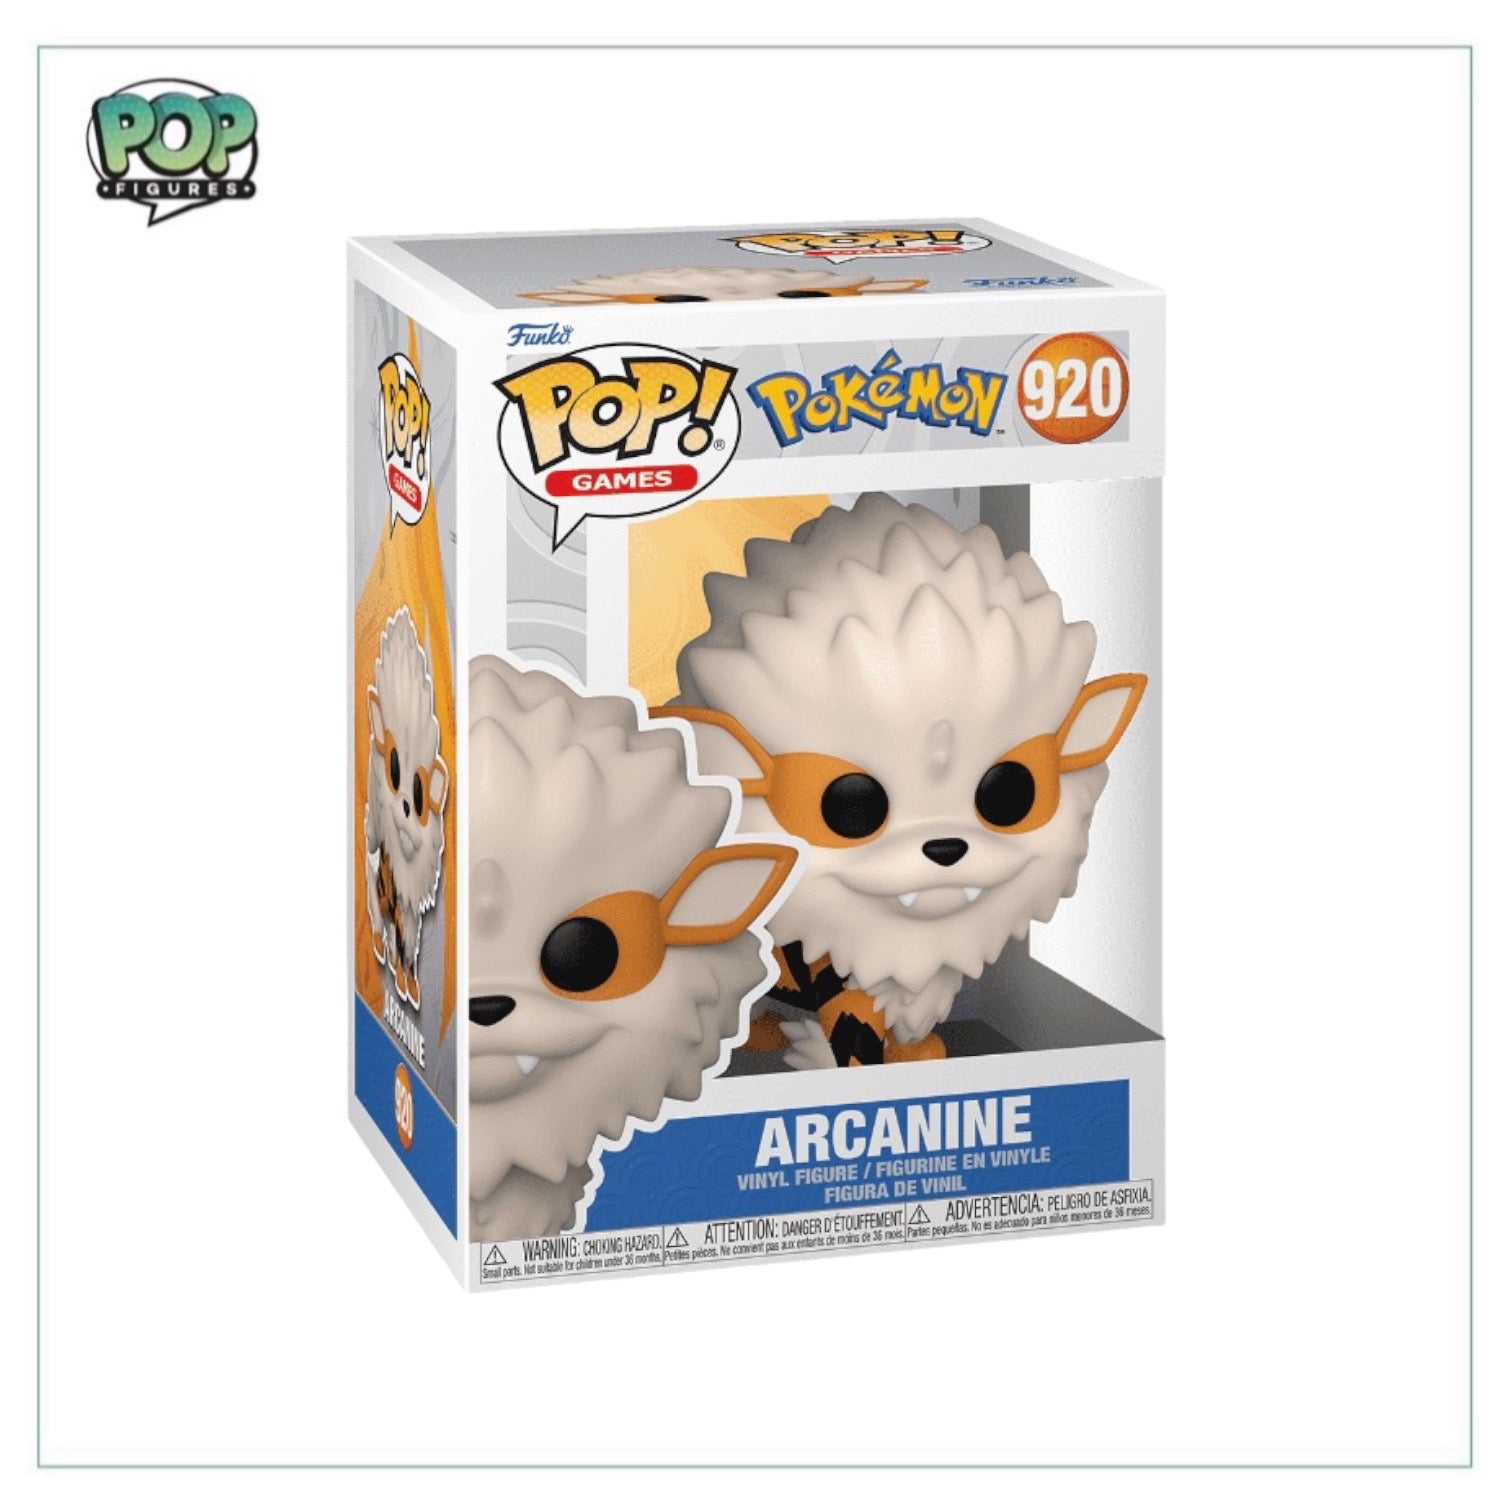 Arcanine #920 Funko Pop! - Pokémon